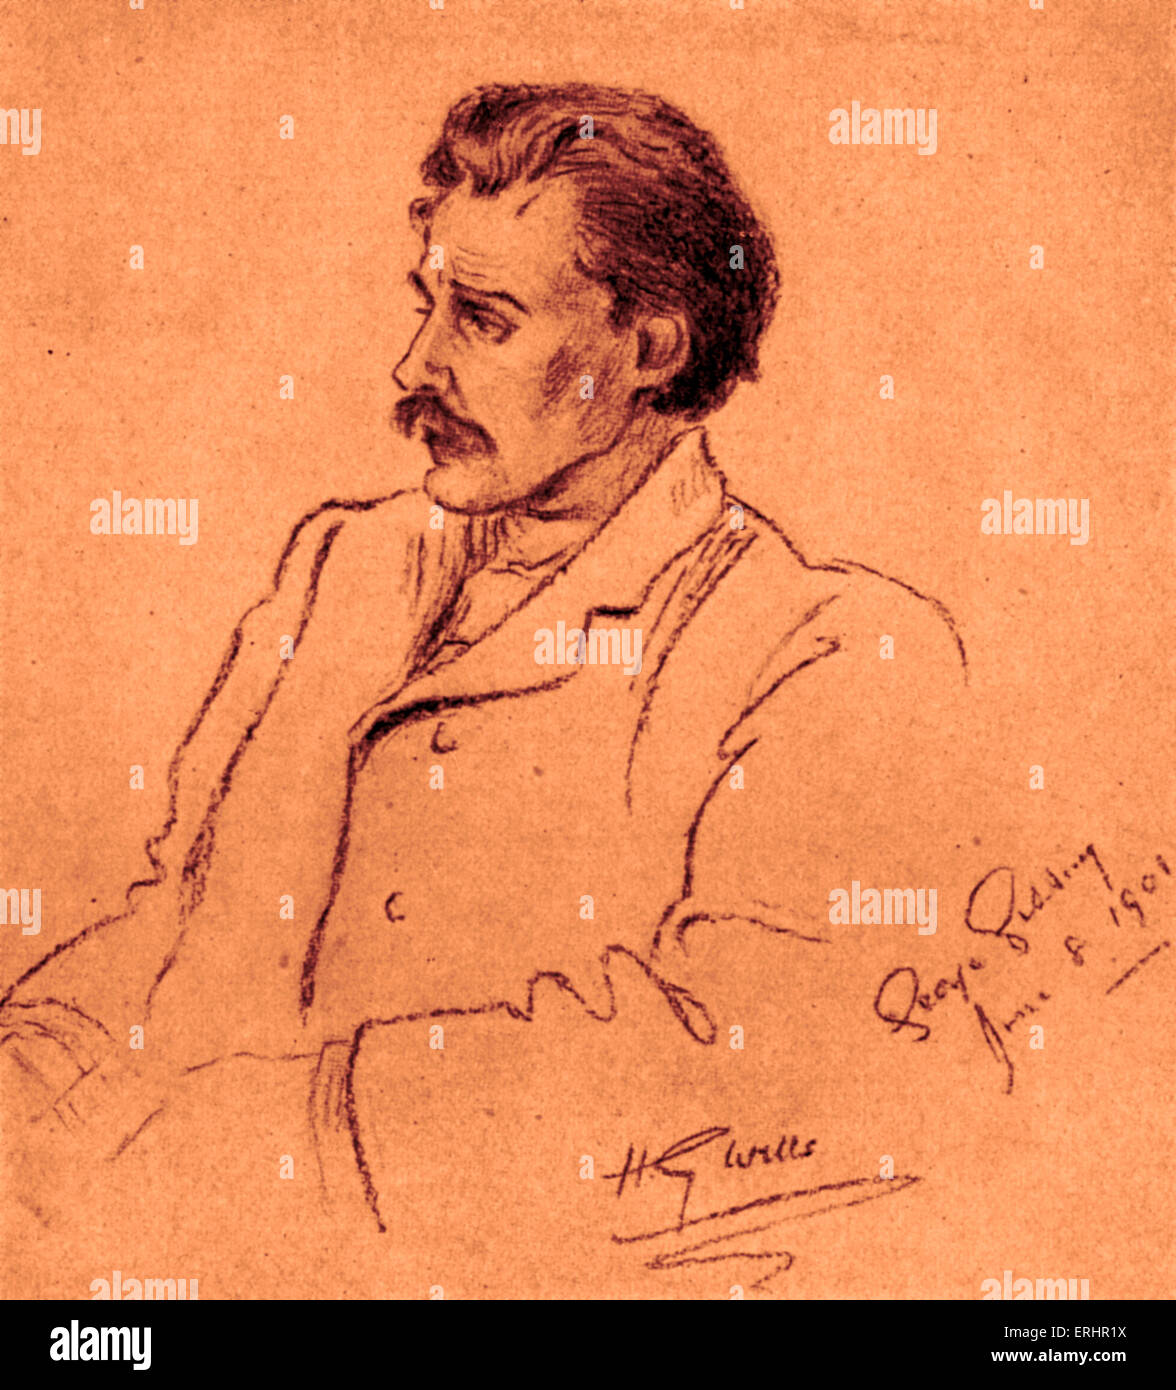 George Gissing - Ritratto del romanziere inglese. Disegno di un suo amico, lo scrittore inglese, H. G. Wells. 22 Novembre 1857 - 28 dicembre 1903. Foto Stock